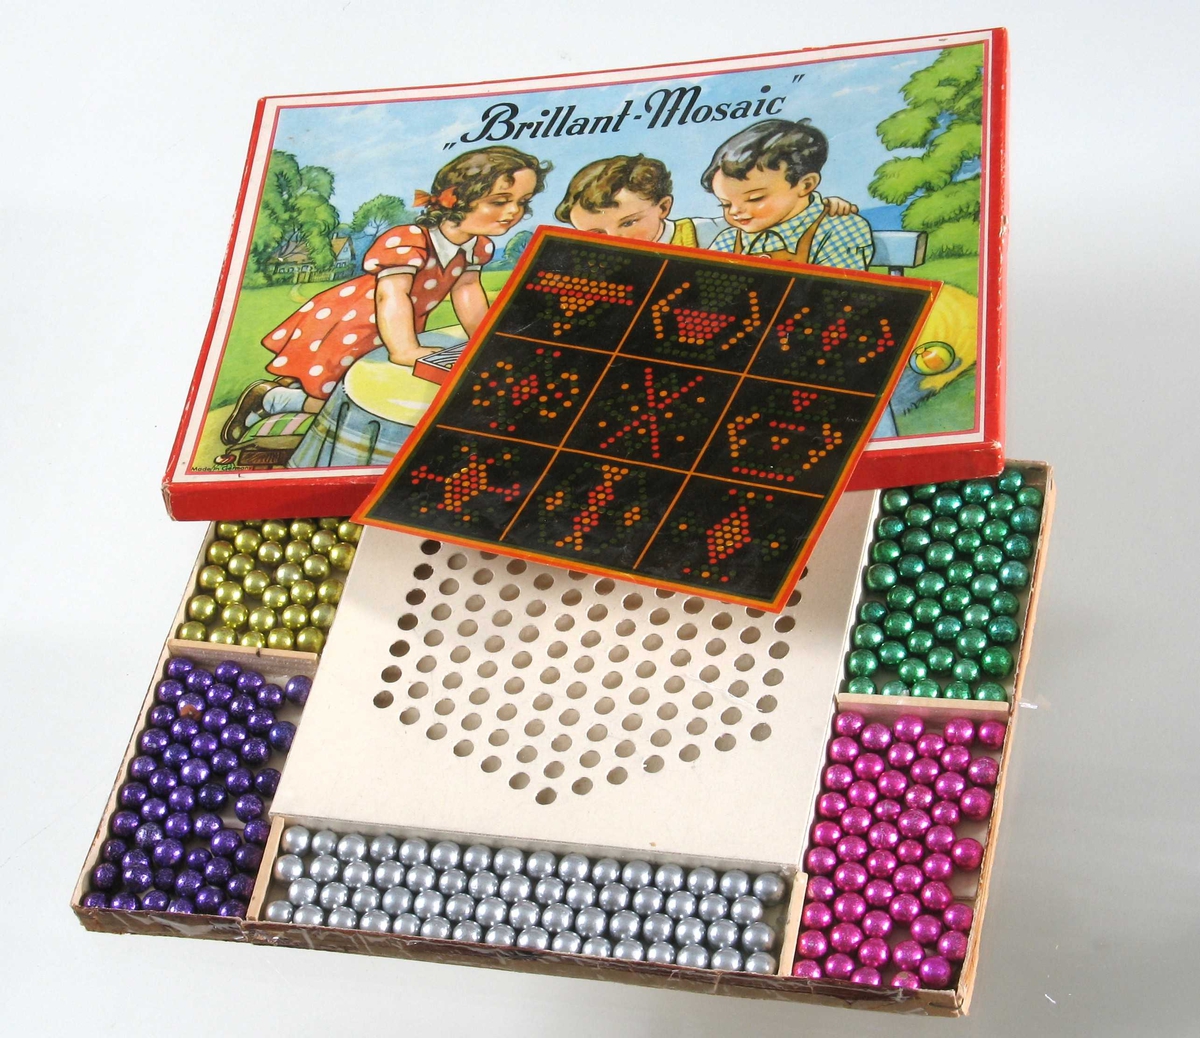 Motiv på esken: 2 gutter og 1 jente ved bord i en hage, leker med liknende spill. 